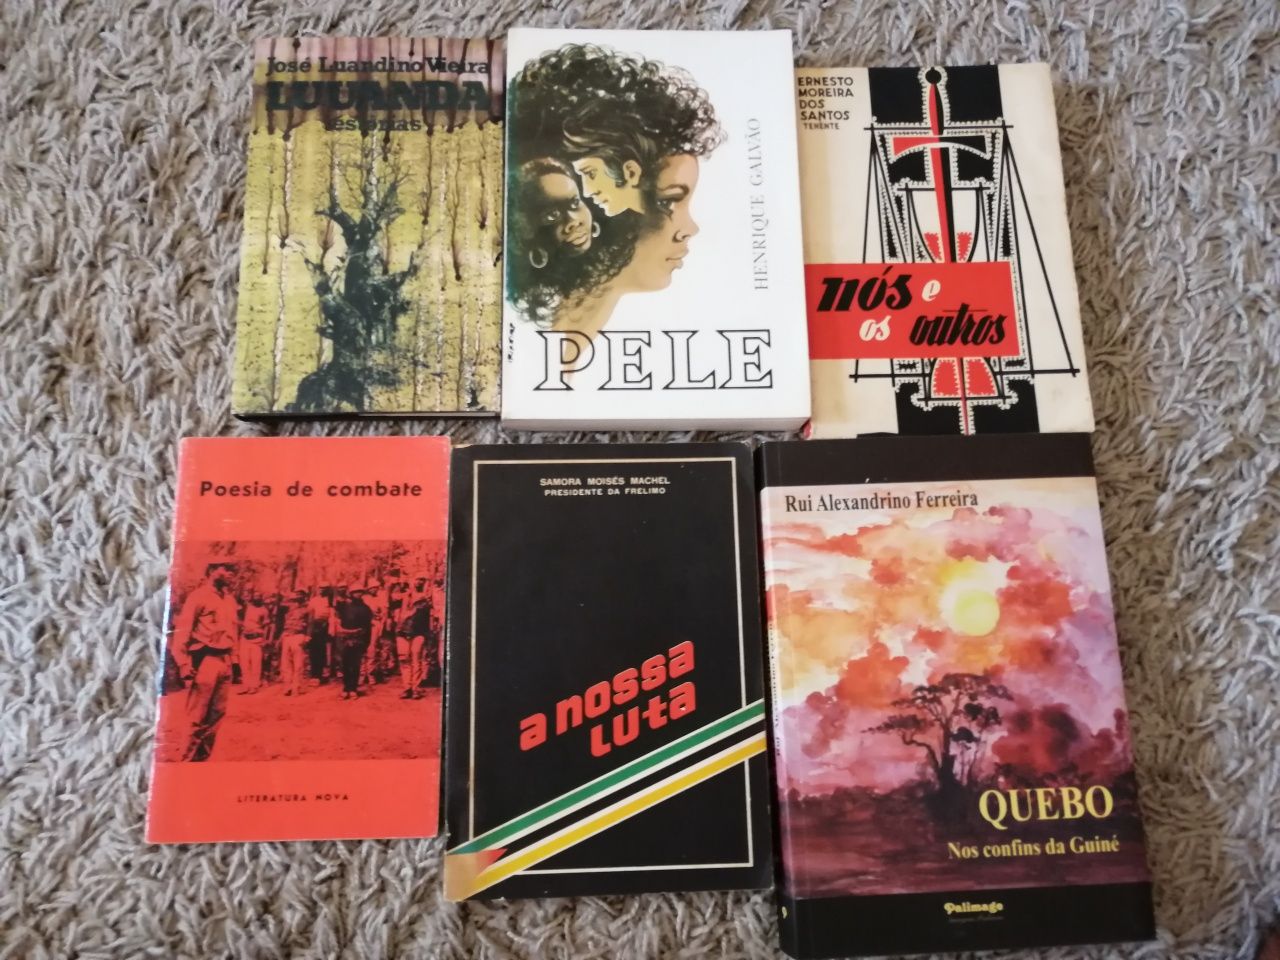 Livros com temática Angola África